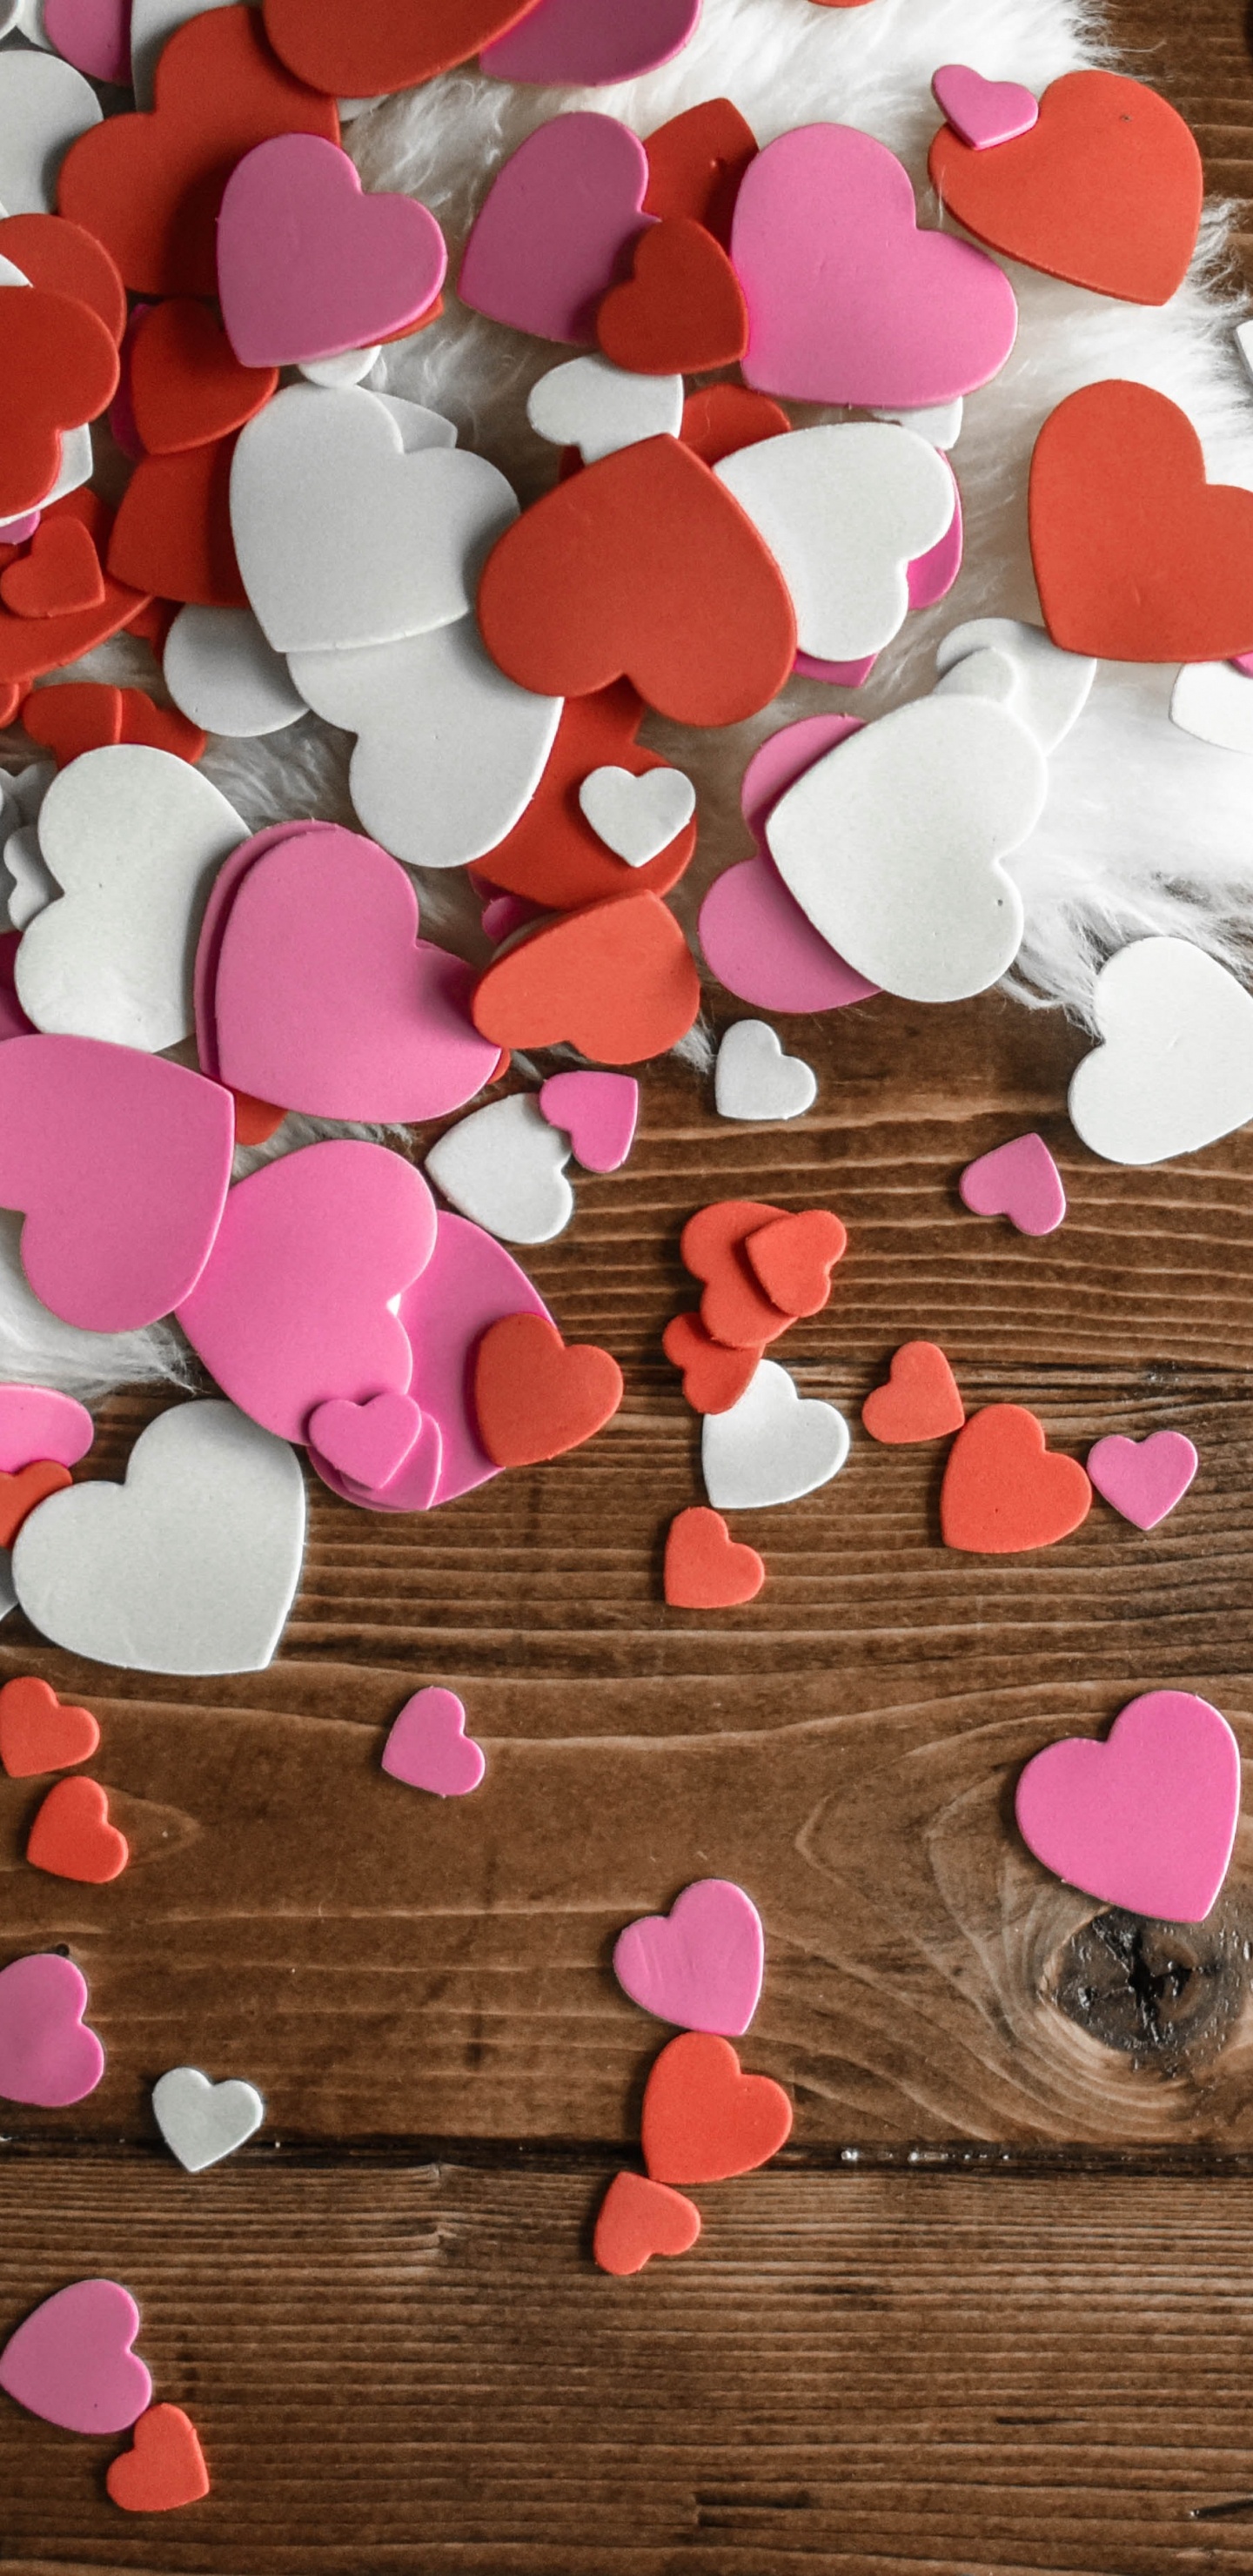 礼物, 心脏, 粉红色, 木, 爱情 壁纸 1440x2960 允许